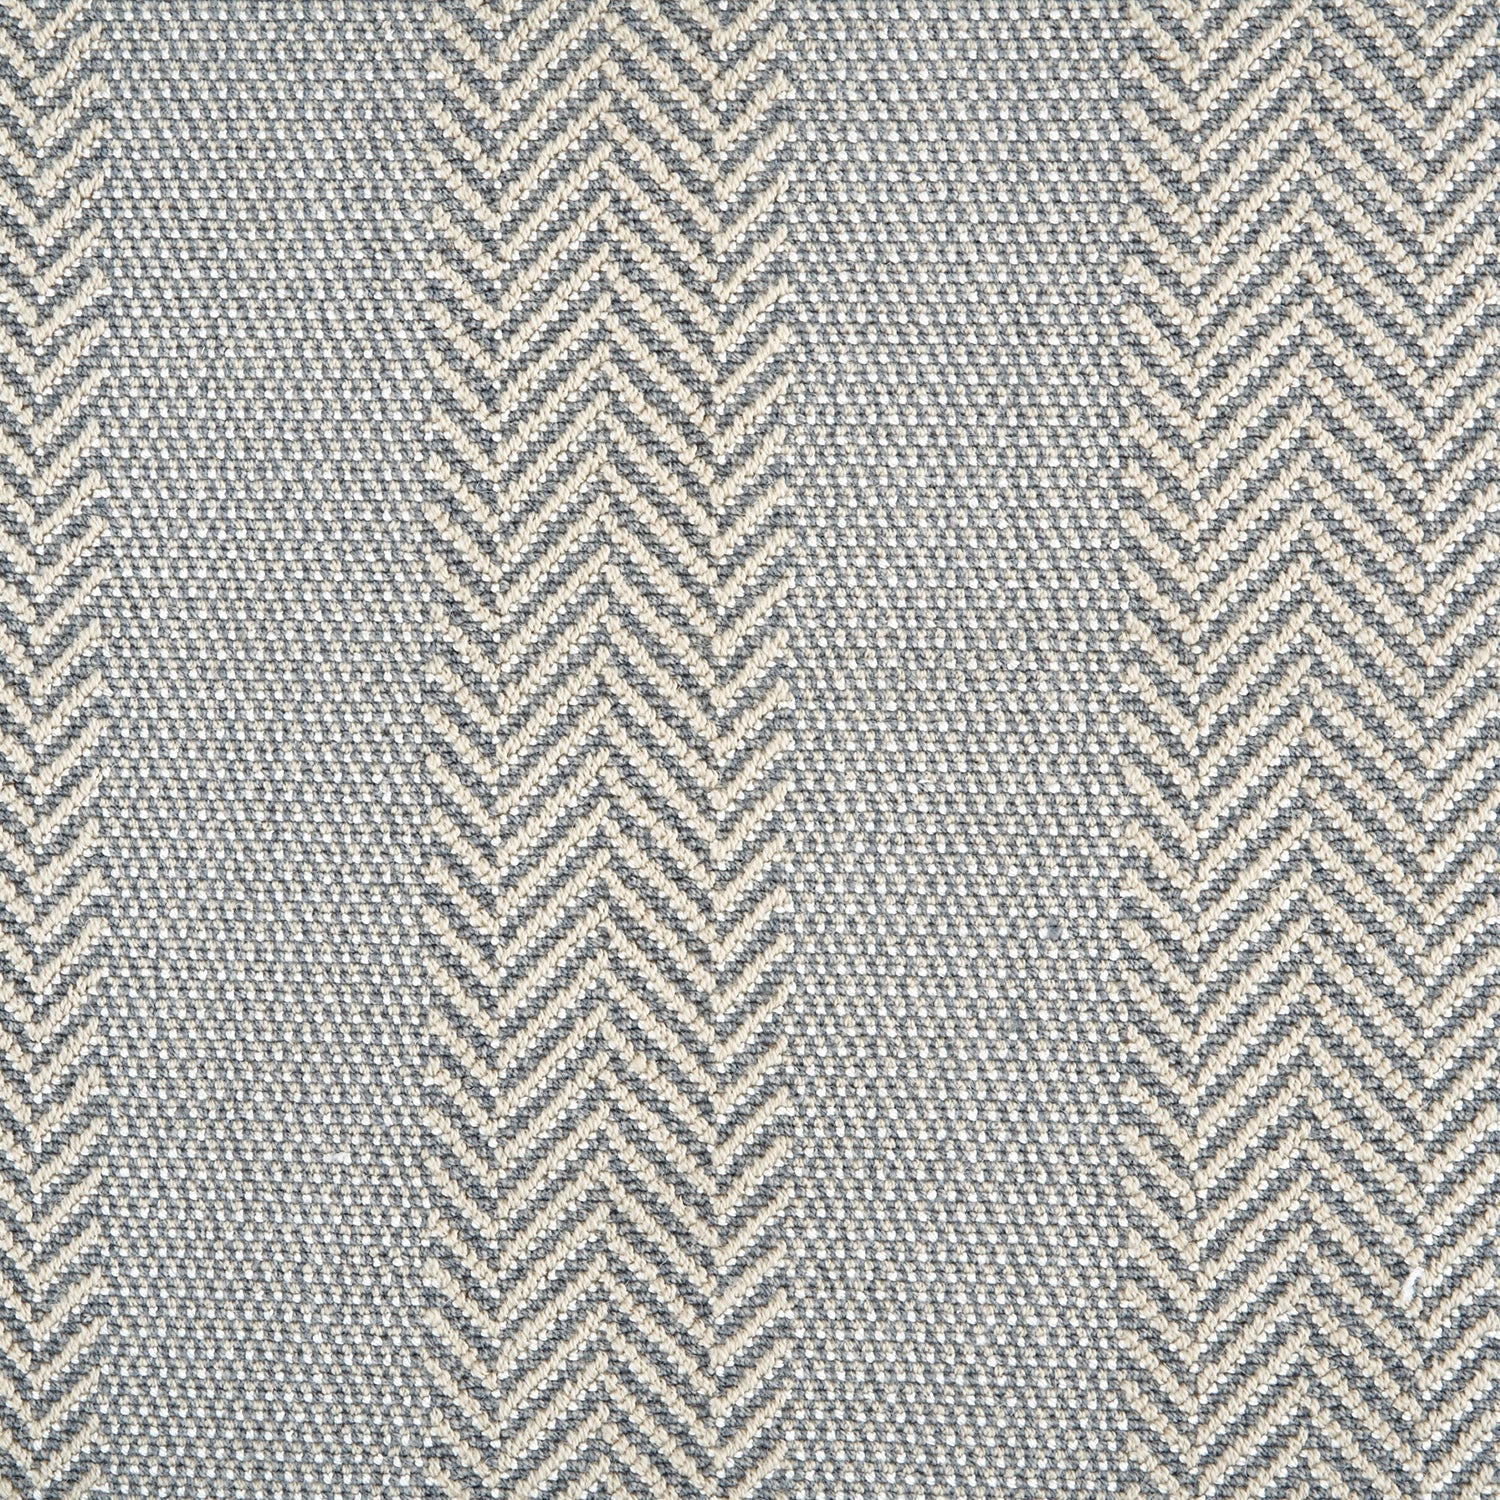 Wool-blend broadloom carpet swatch in a woven stripe pattern in tan and gray.